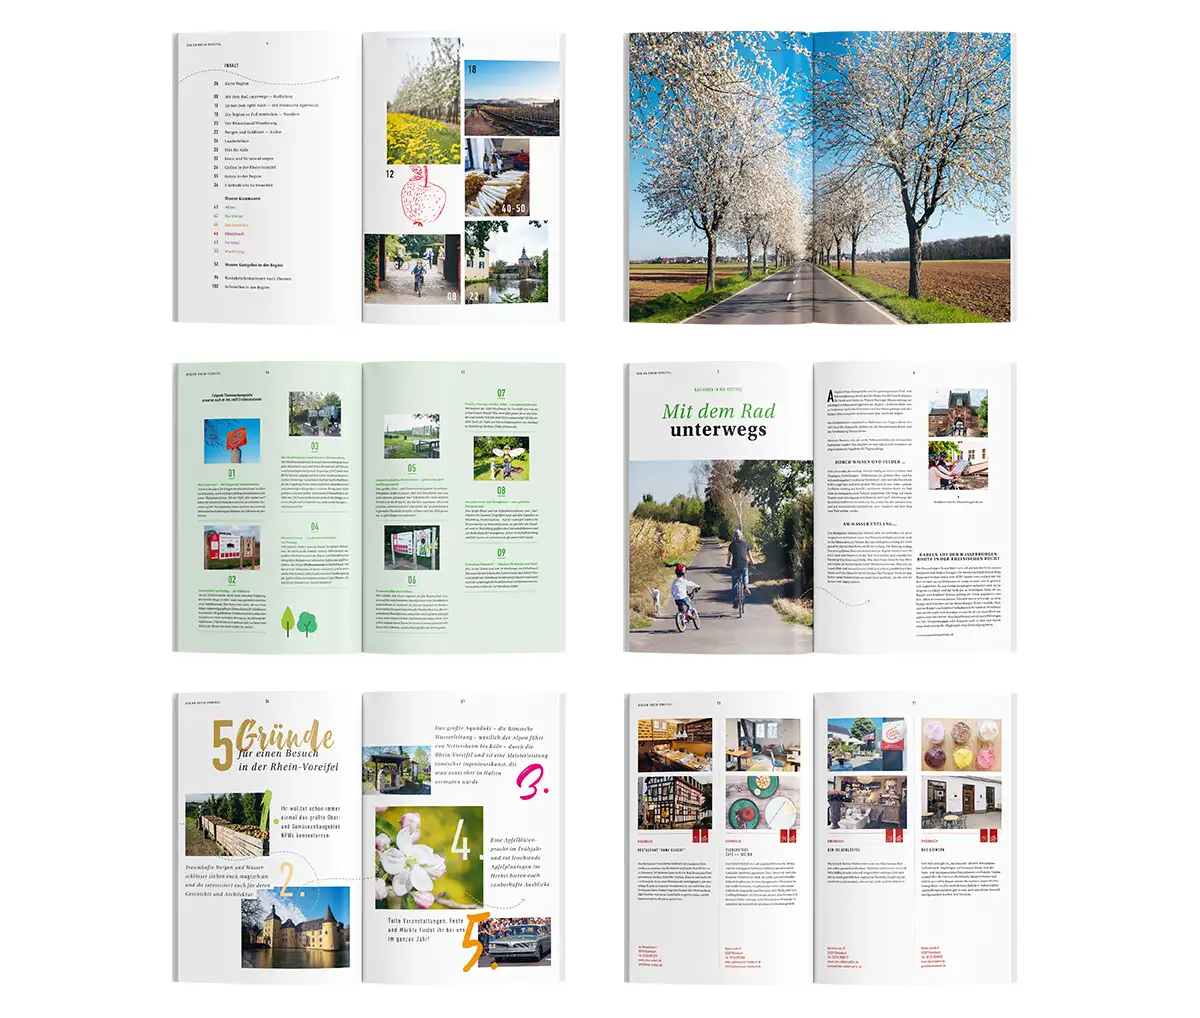 Mehrere Doppelseiten des Magazins, u.a. das Inhaltsverzeichnis, eine Fotodoppelseite, eine Seite über Radfahren in der Region, Vorstellung von Gastgebern und 5 Gründe für die Rhein-Voreifel.